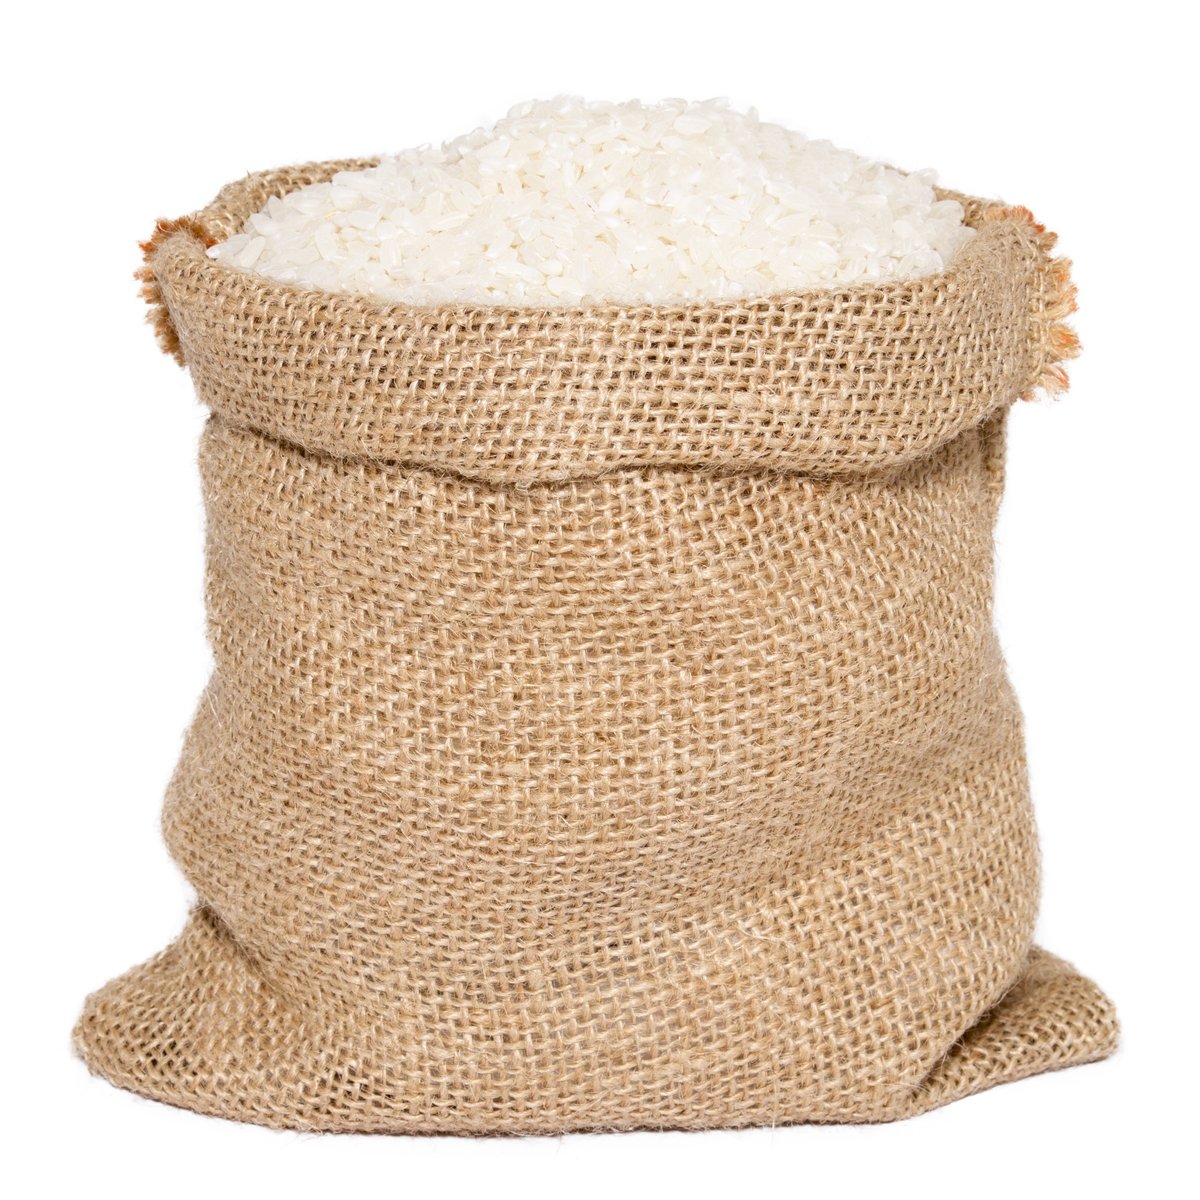 Weltreistag: Ein Sack Reis fällt um